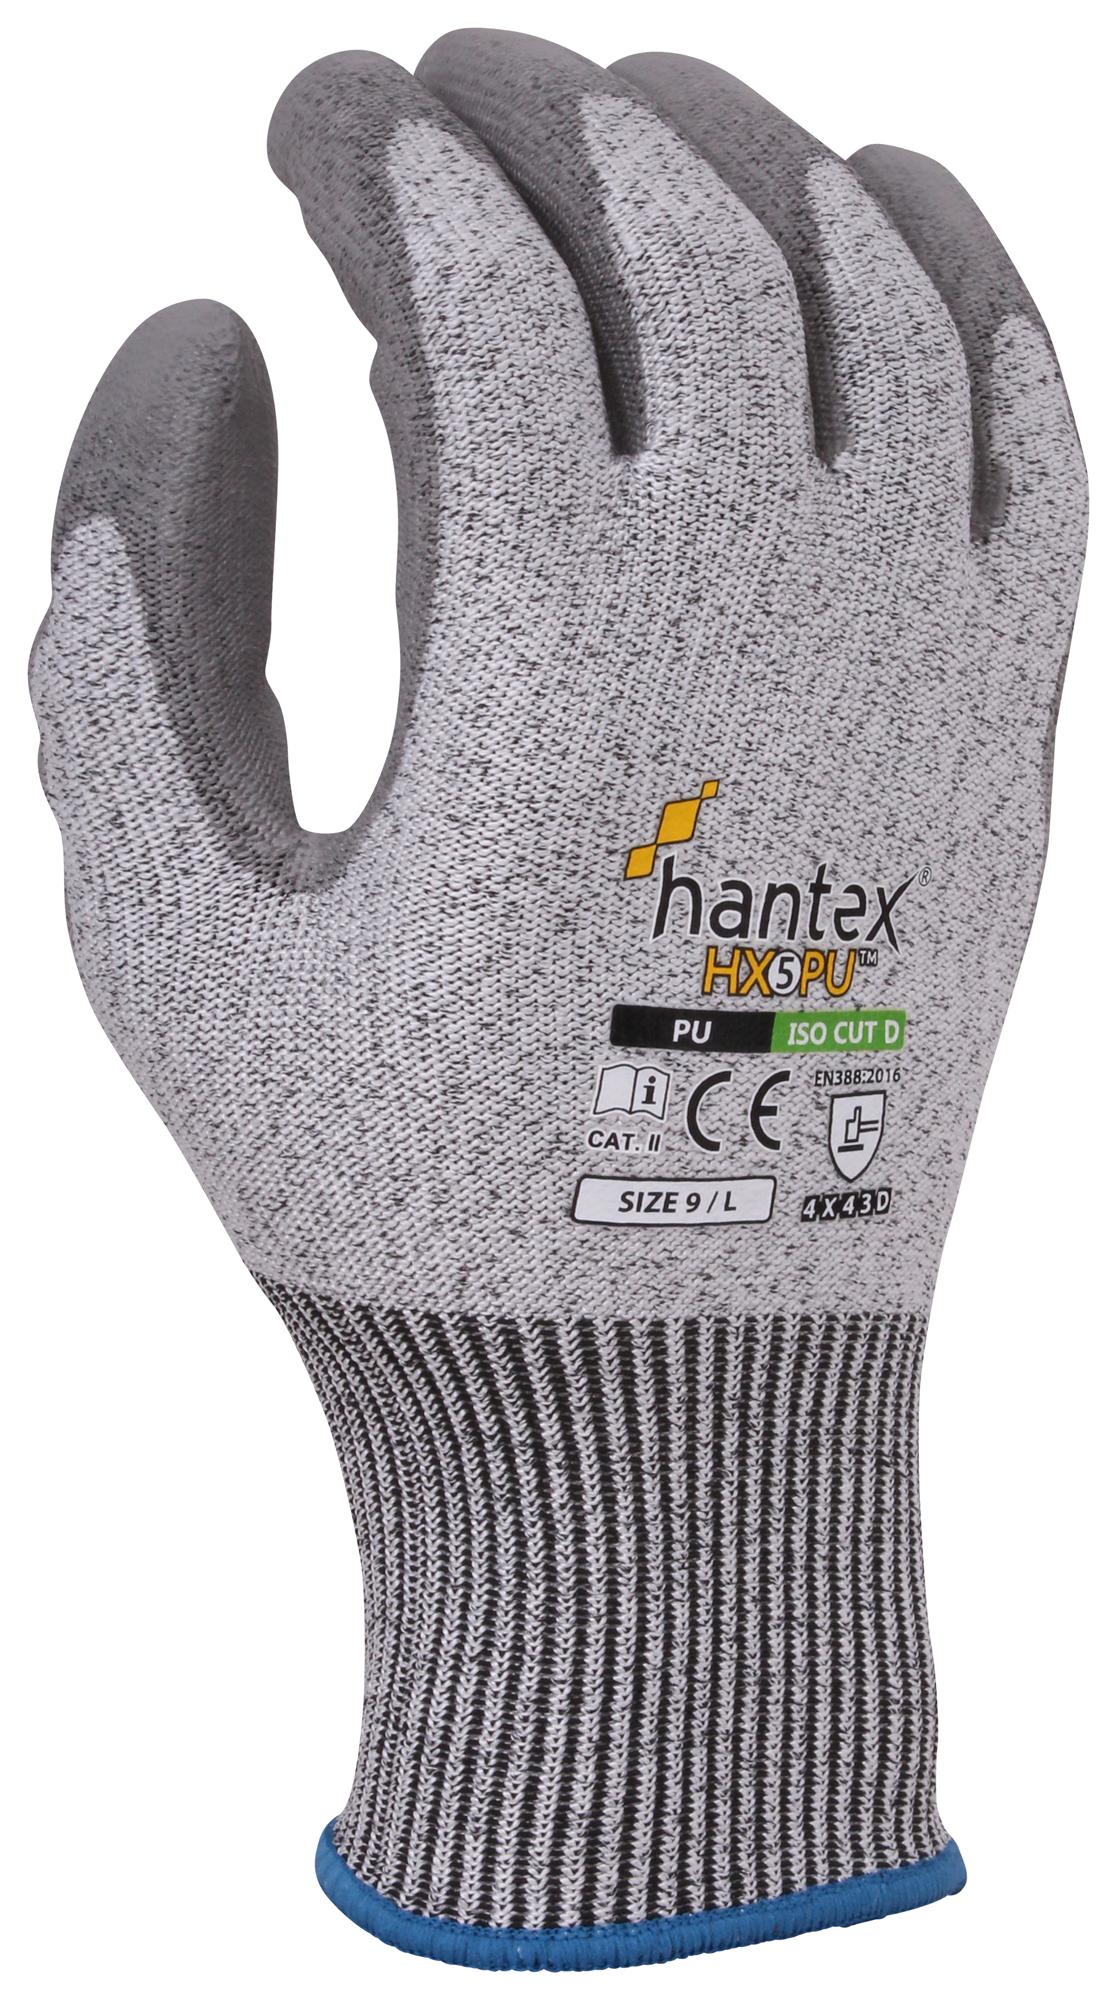 Uci G/hantex-Hx5/pu/07 Gloves, Hppe, Grey, S